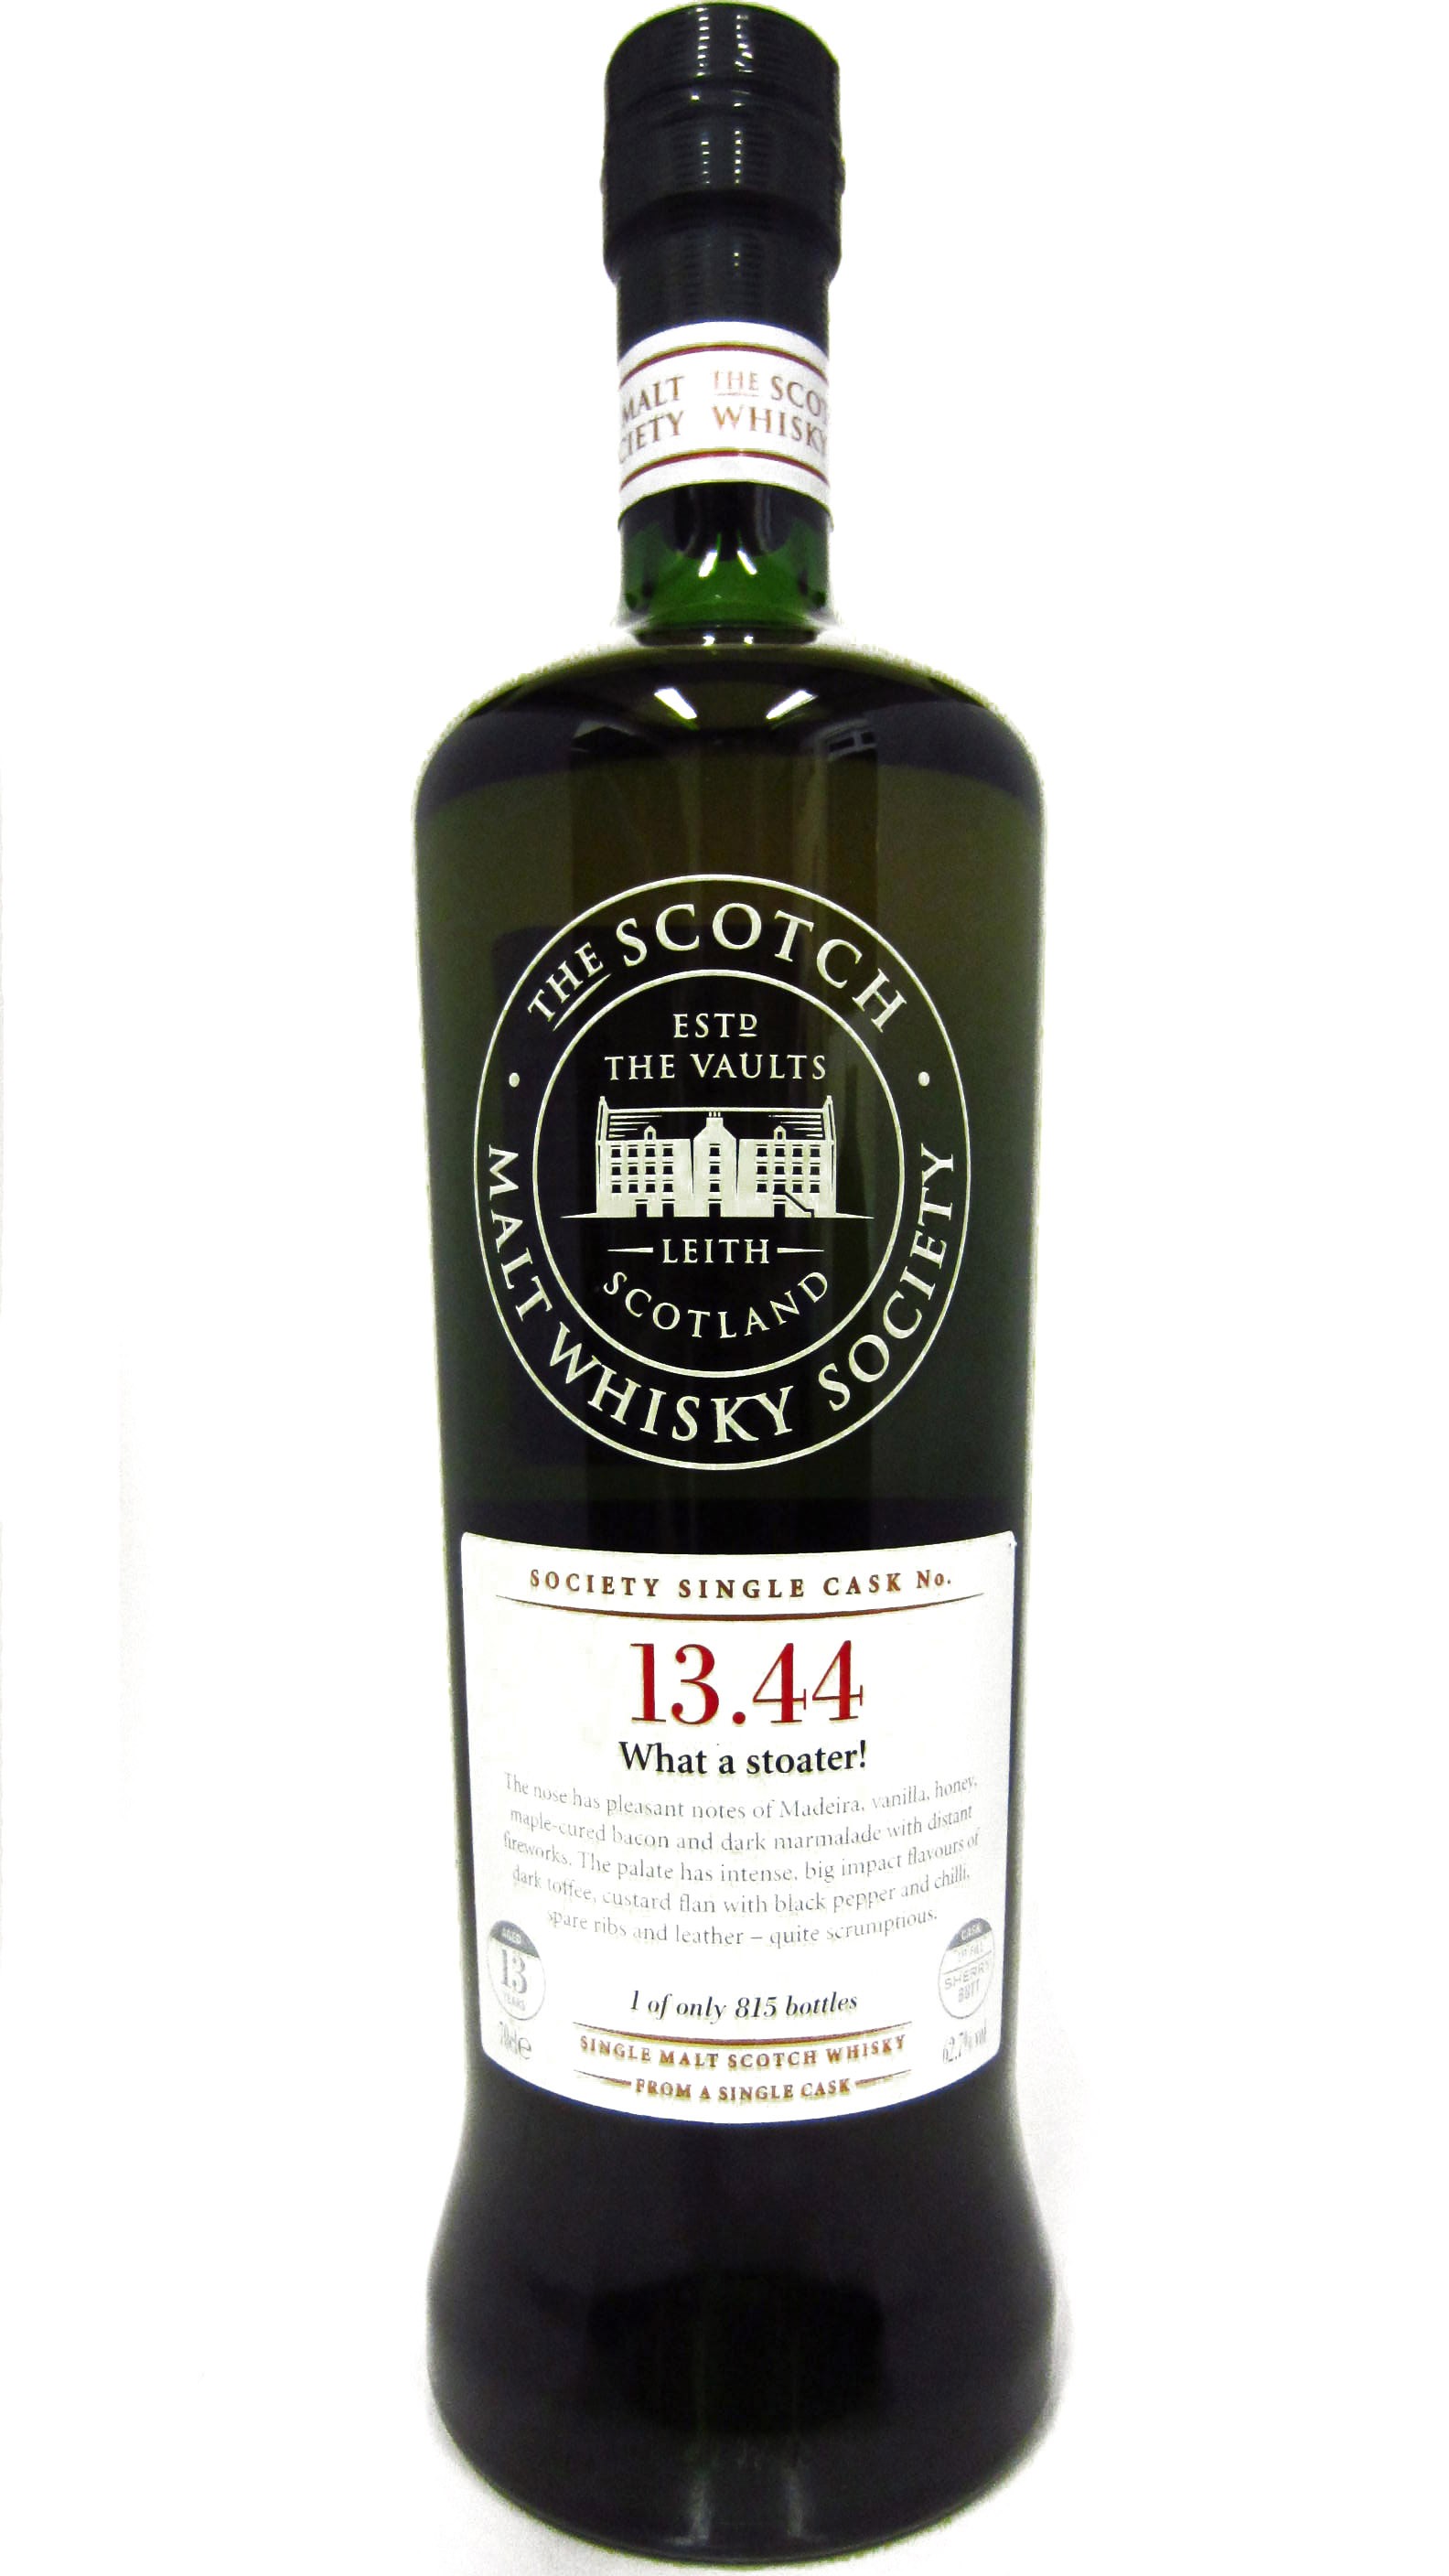 3. Scotch Malt Whisky Society